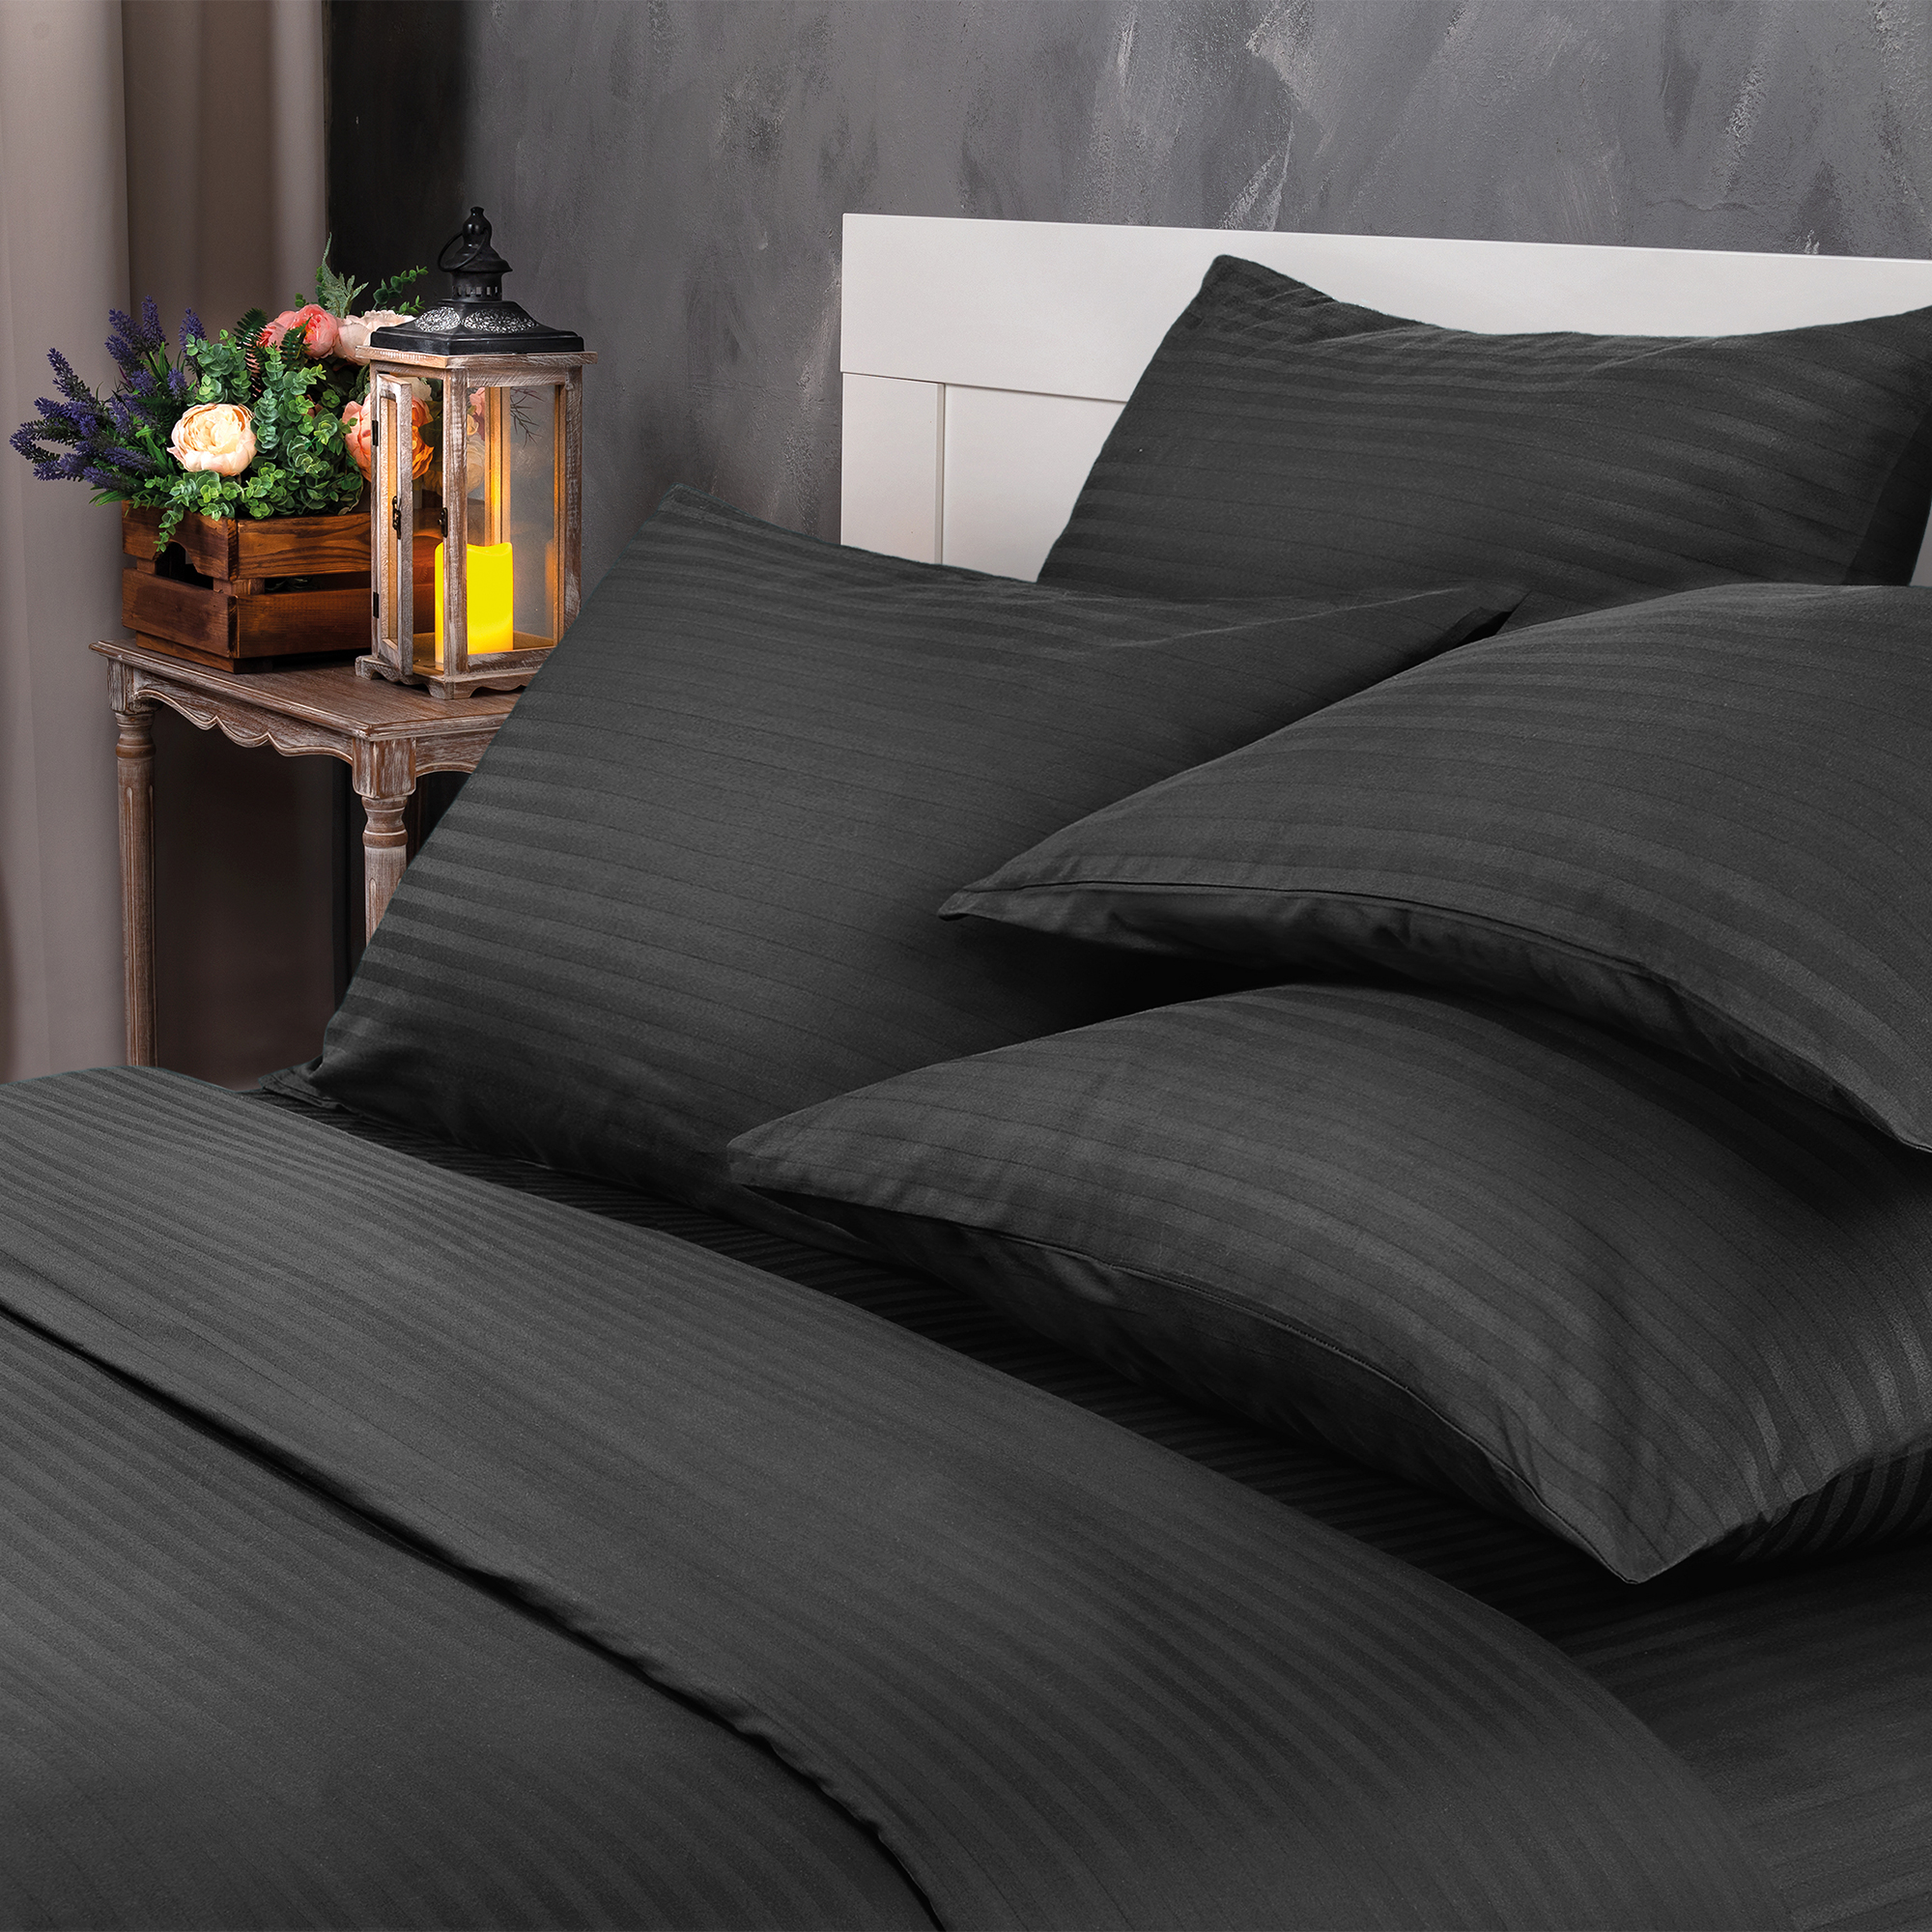 Комплект постельного белья Verossa 2.0СП Black страйп-сатин наволочки 70х70см 100% хлопок - фото 2